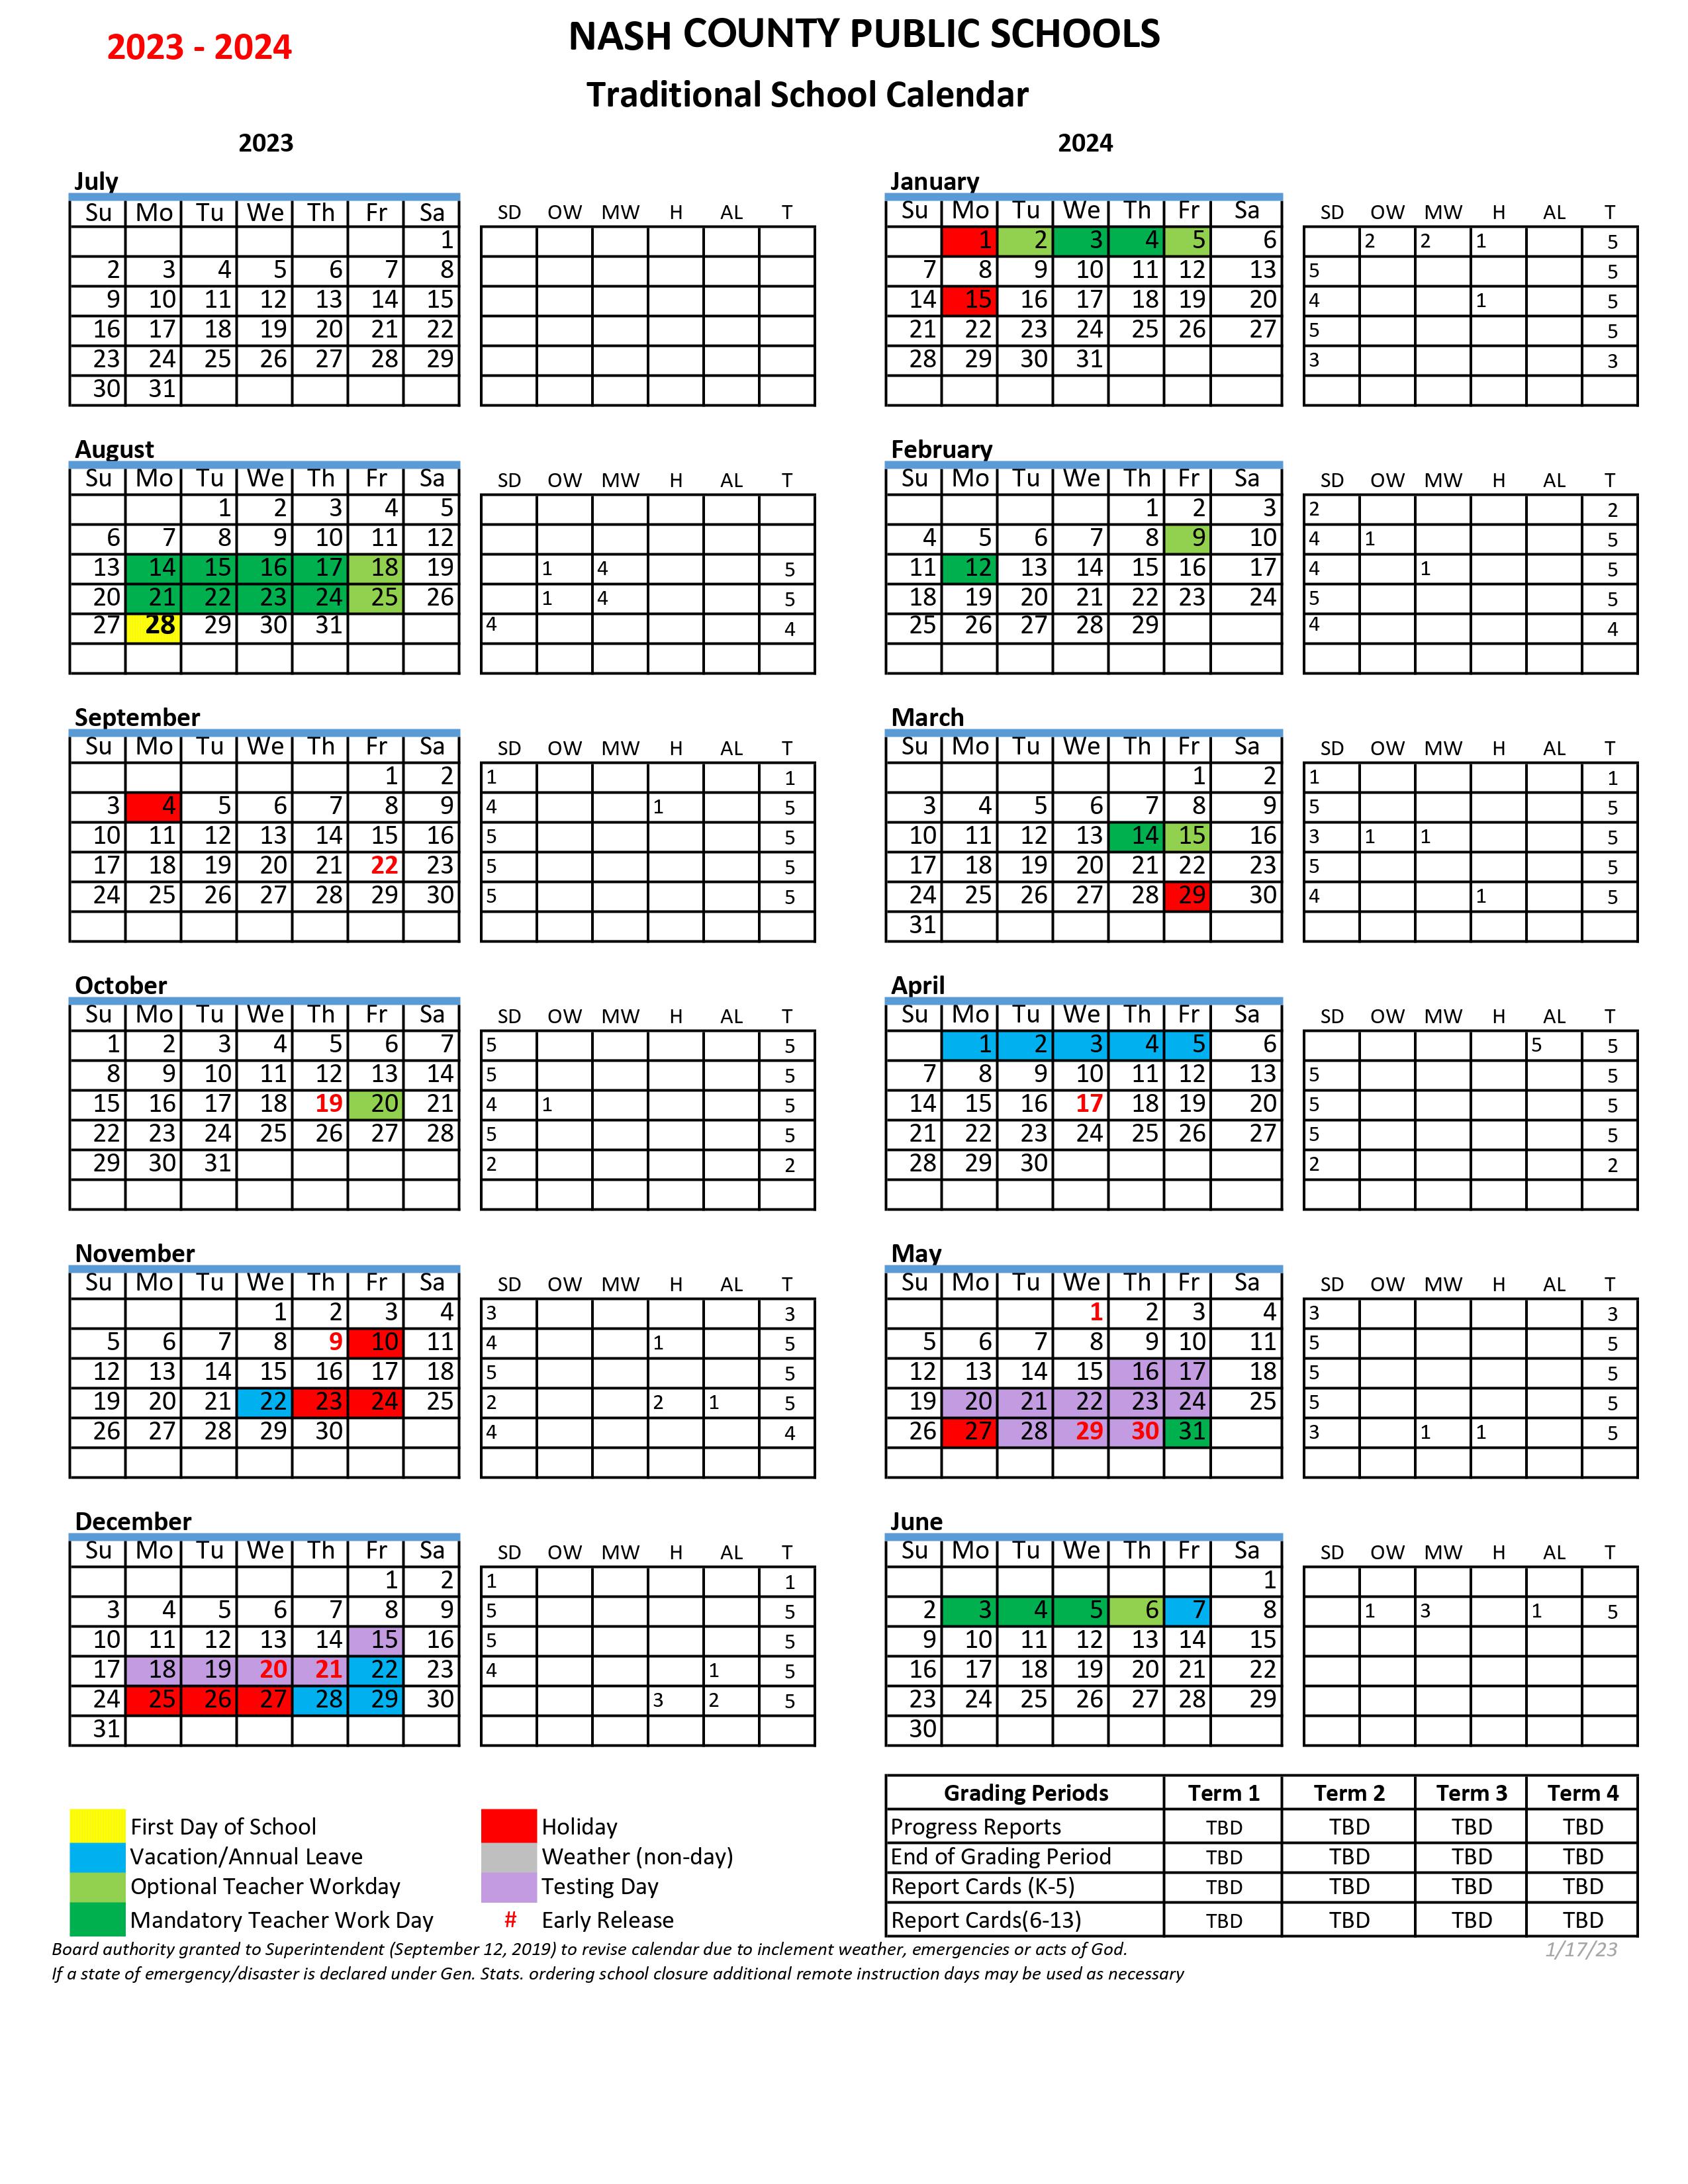 Nash County Public Schools Traditional Calendar